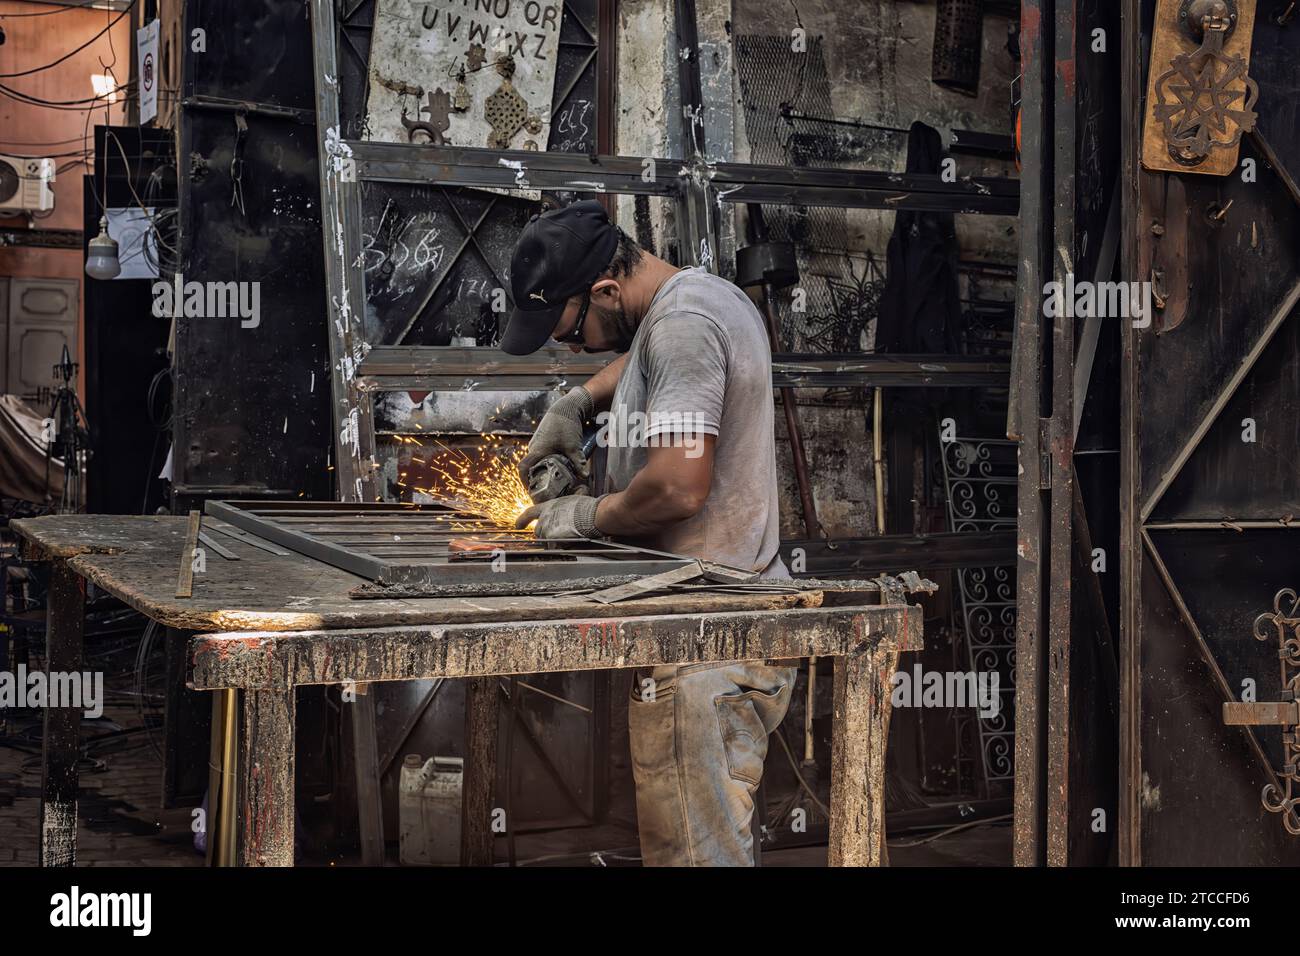 Marrakesch, Marokko: Schmied arbeitet in einer Werkstatt im Souk der Marrakesch Medina. Marokkanischer Handwerker, der beim Schweißen Funken erzeugt. Stockfoto